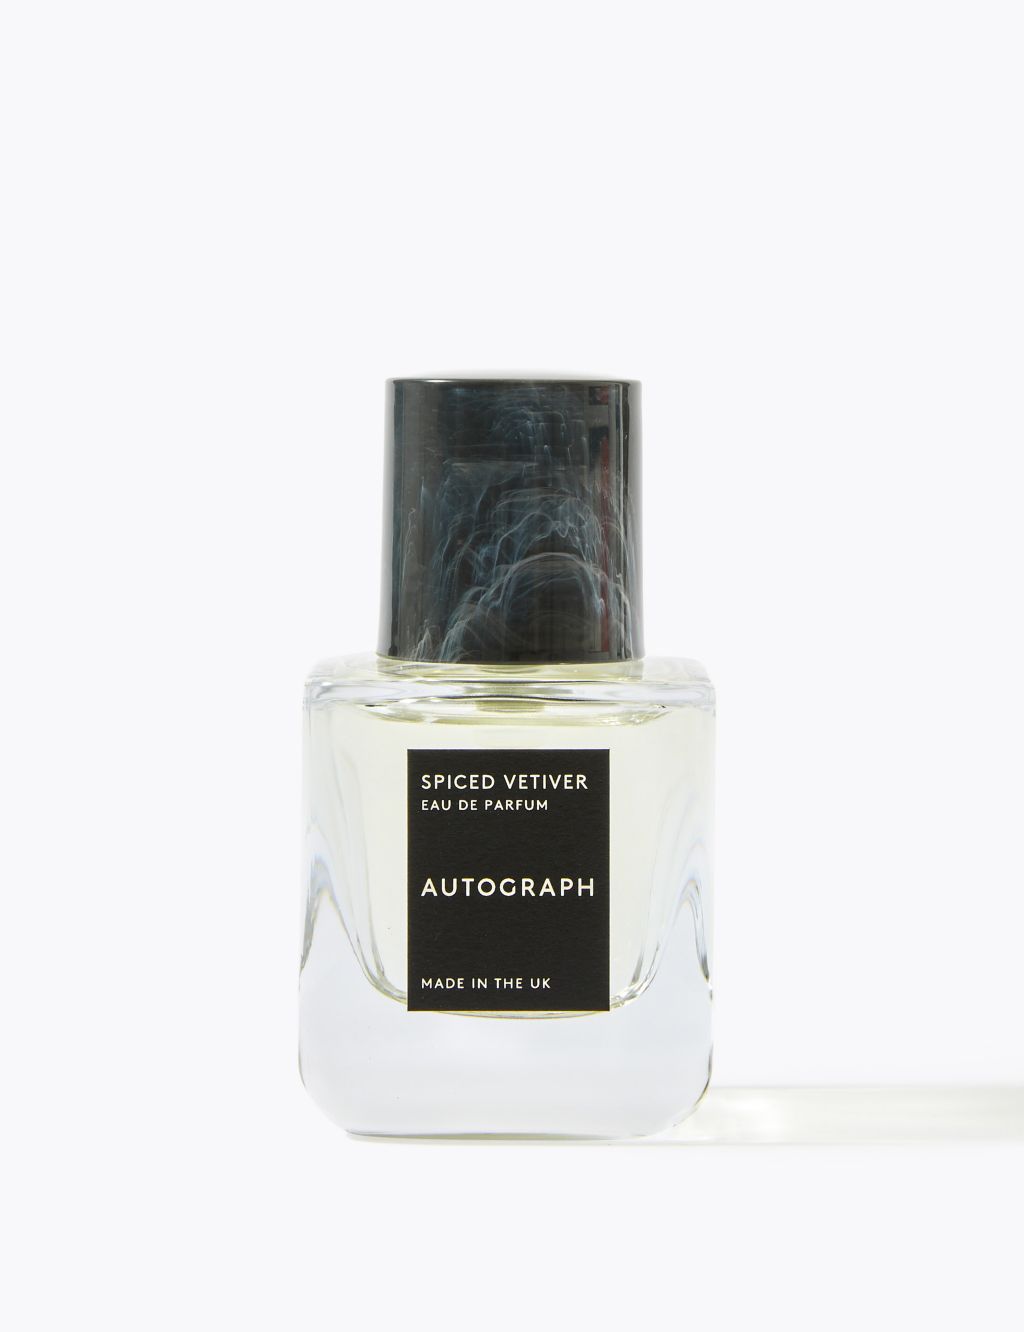 Spiced Vetiver Eau de Parfum 30ml | Autograph | M&S